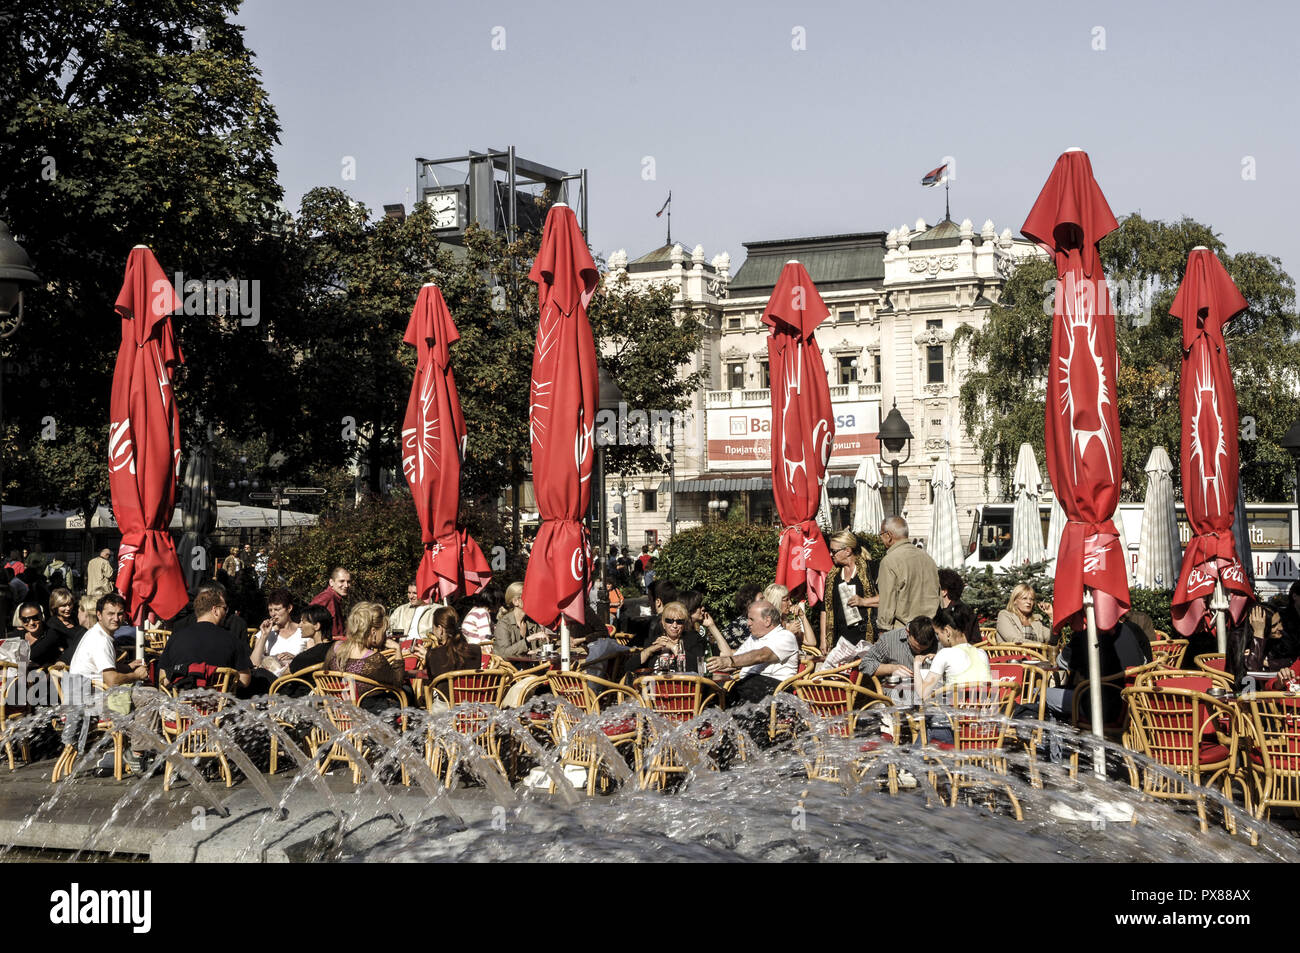 Beograd, city center, square Trg Republike, Serbia-Montenegro, Belgrade Stock Photo